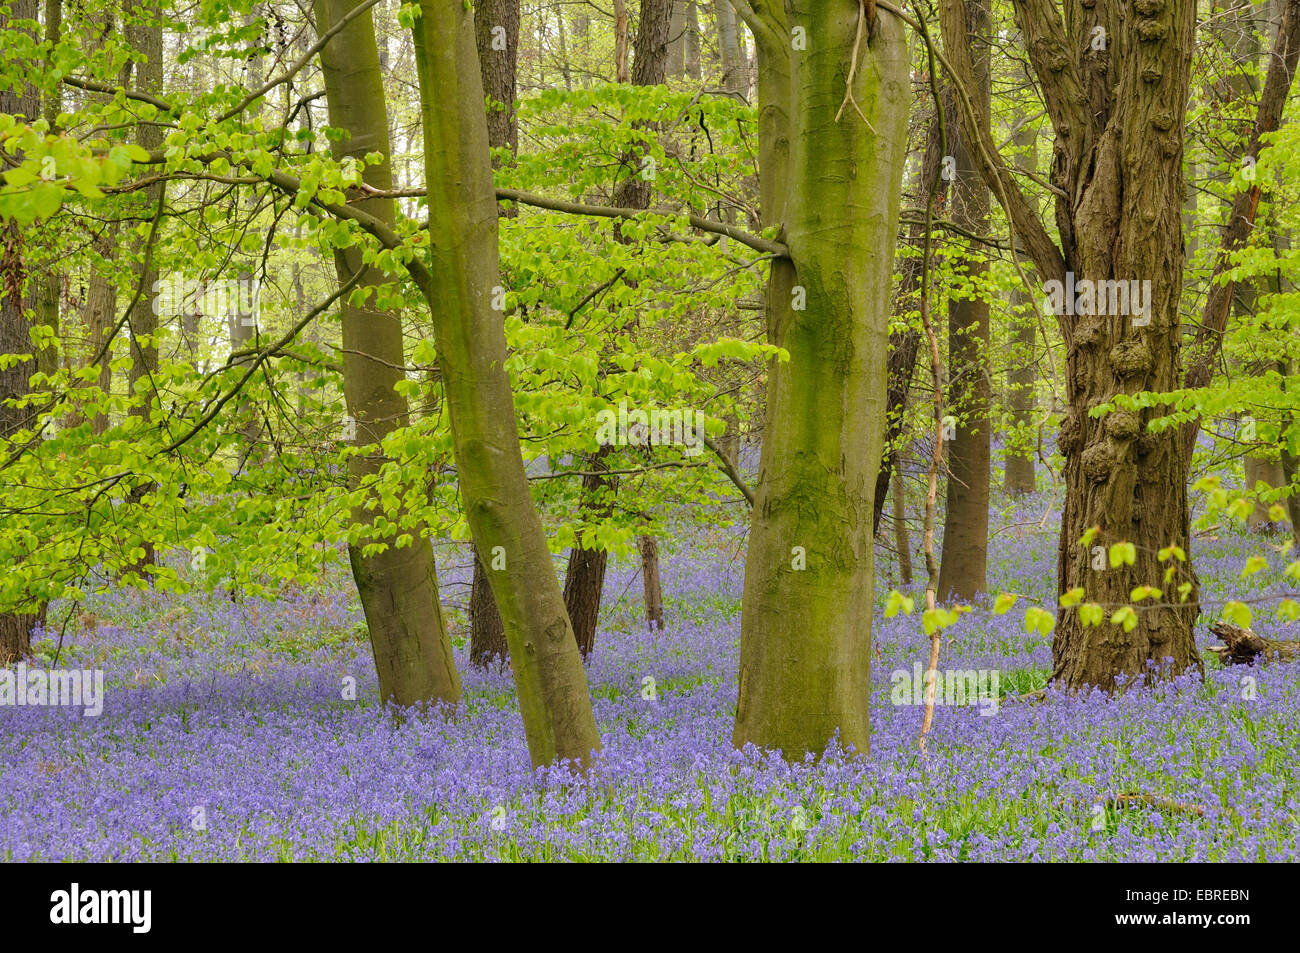 Bluebell atlantique (Hyacinthoides non-scripta, Endymion non-scriptus, Scilla non-scripta), qui fleurit sur le sol de la forêt au printemps, Allemagne Banque D'Images